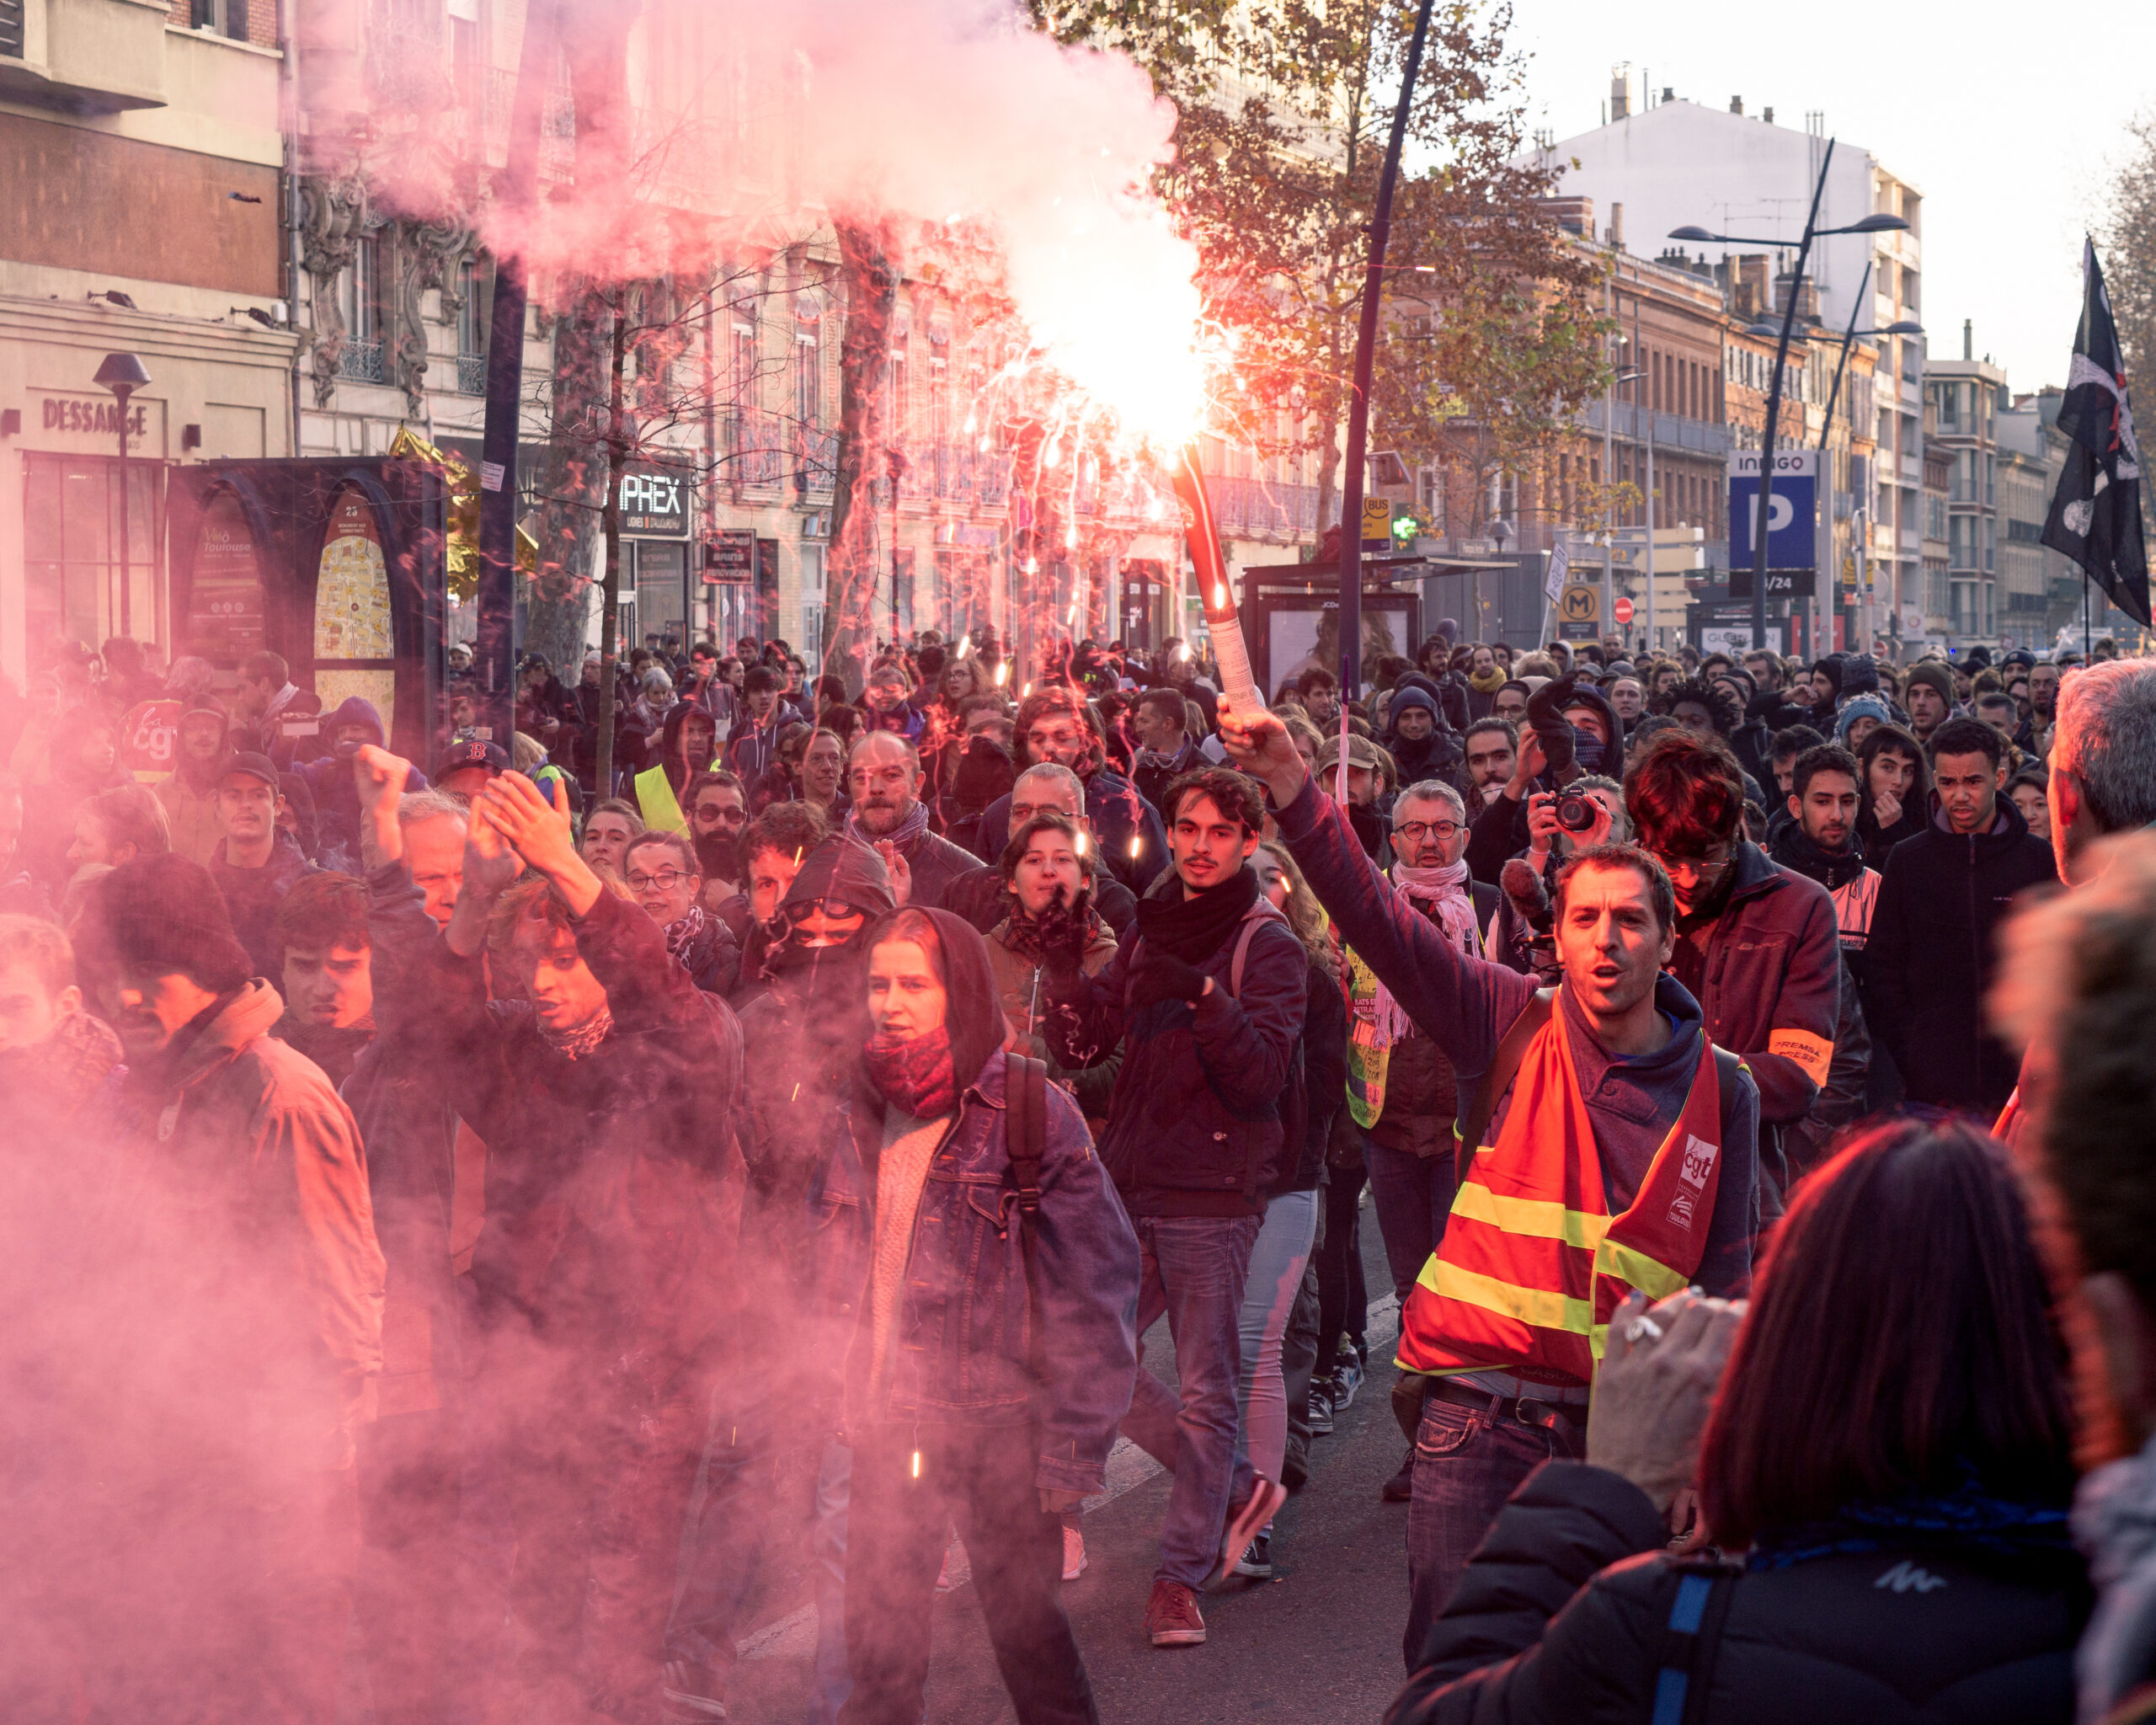 Nach Alleingang Macrons öffnet sich in Frankreich eine enorme politische Krise